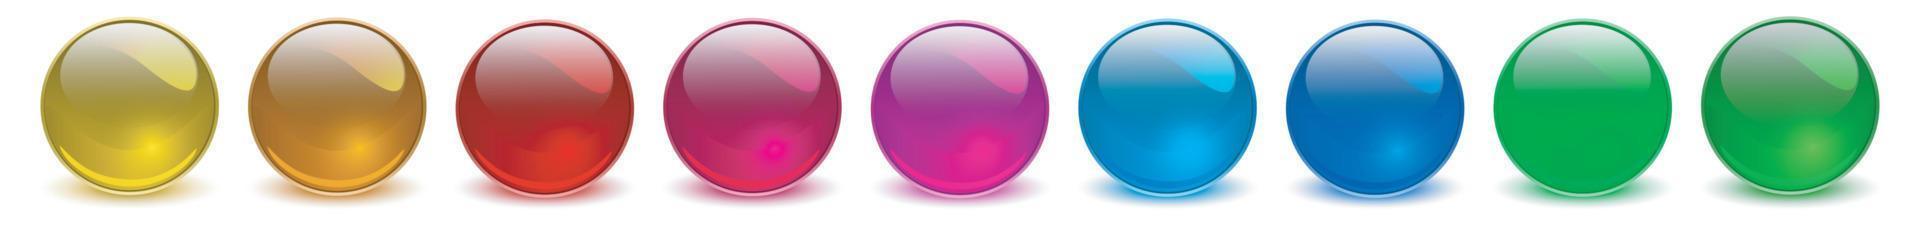 ensemble de sphères colorées, collection de boules de verre colorées 3d brillantes et brillantes. vecteur